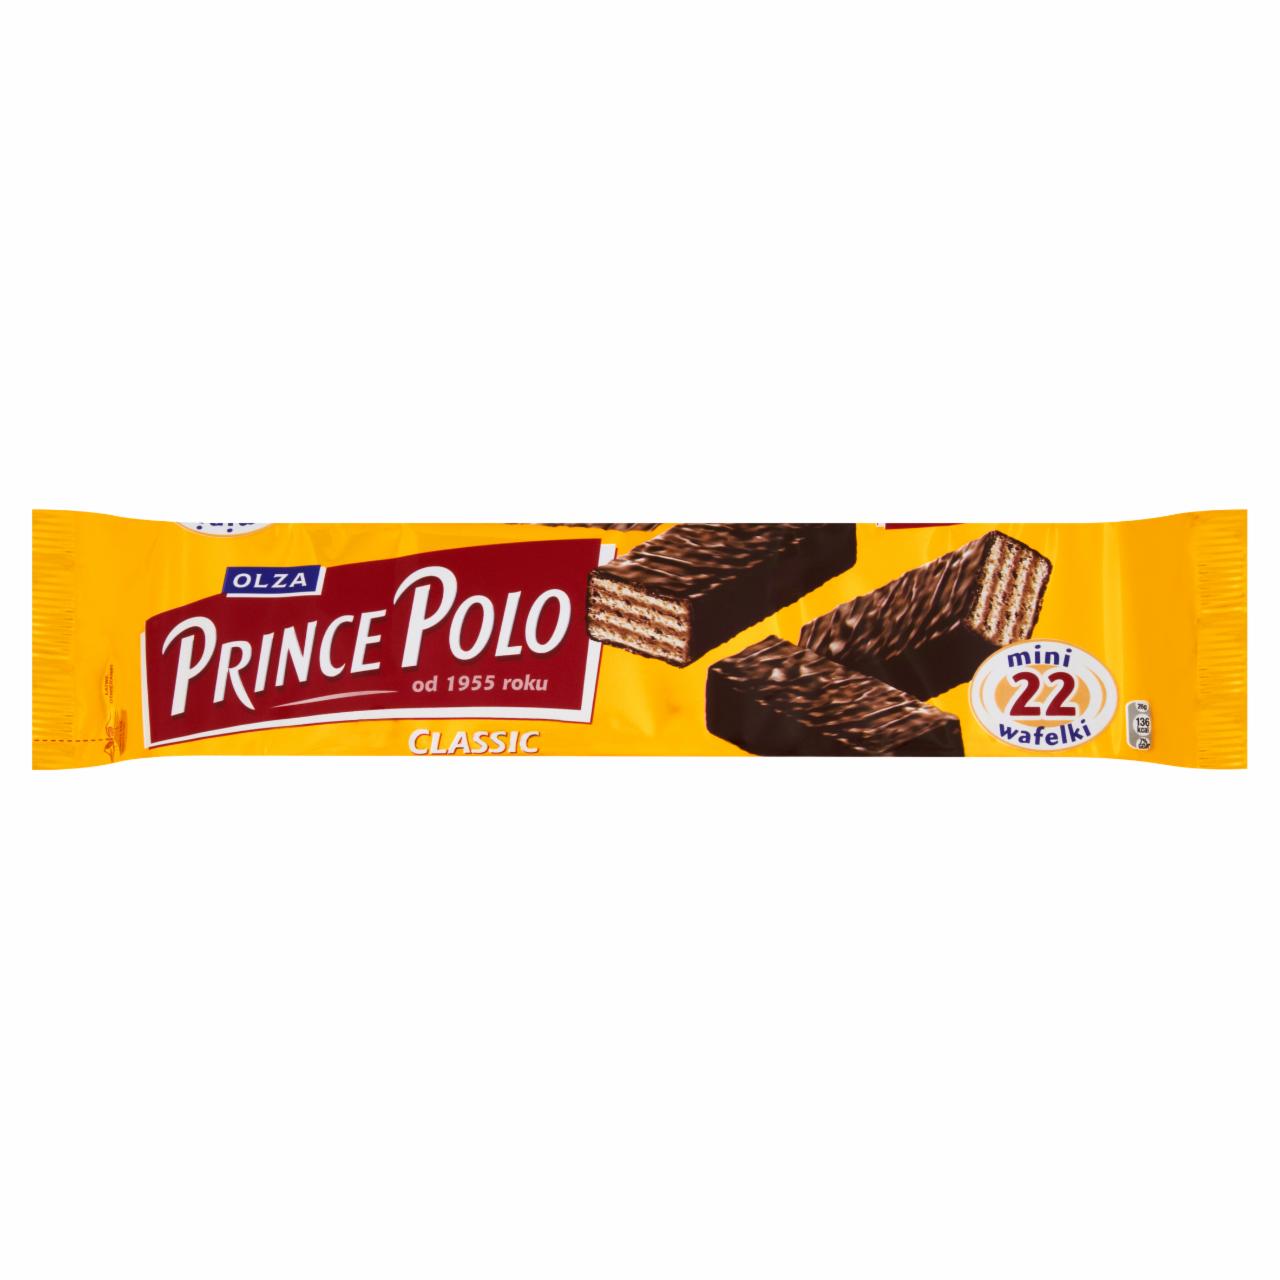 Zdjęcia - Olza Prince Polo Classic Kruche wafelki z kremem kakaowym oblane czekoladą 141 g